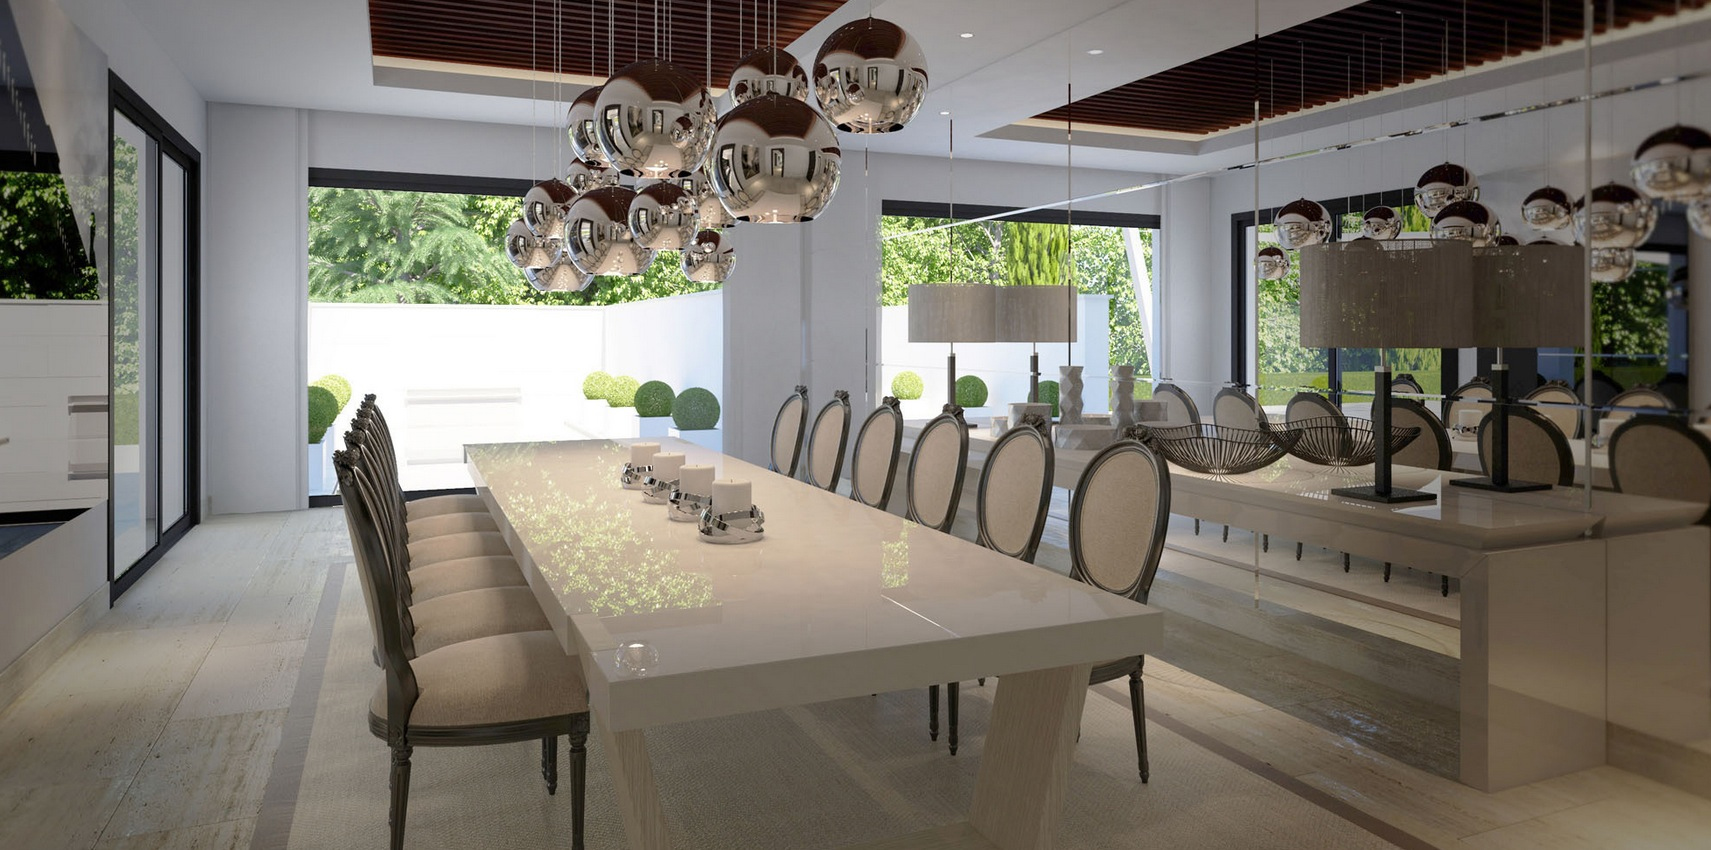 Formal Dining Room Interior Design Ideas